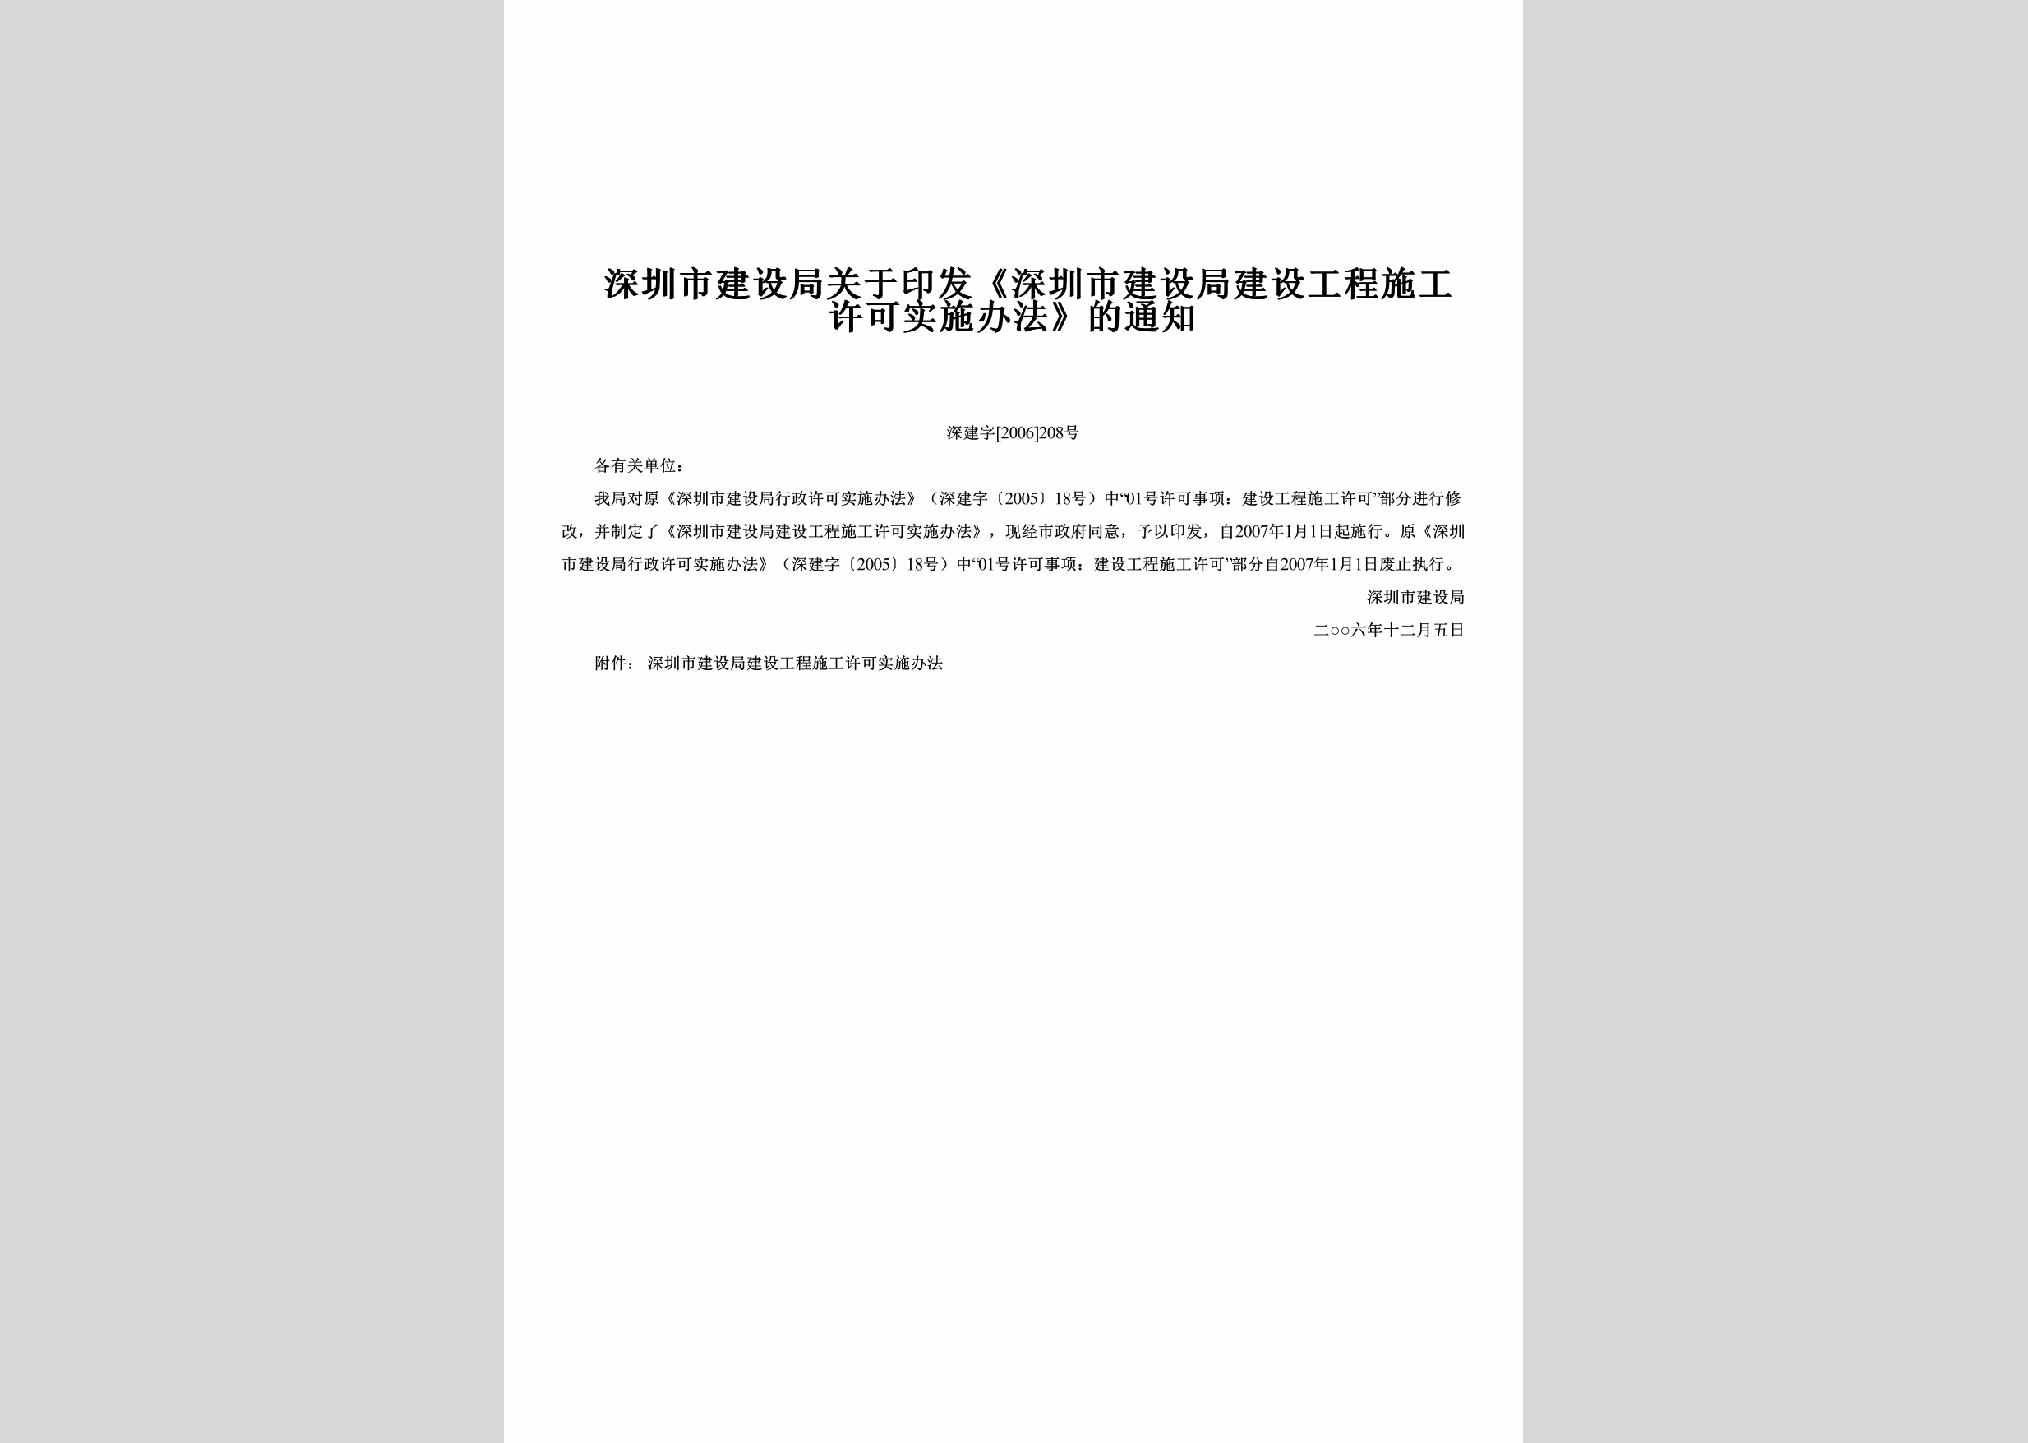 深建字[2006]208号：关于印发《深圳市建设局建设工程施工许可实施办法》的通知